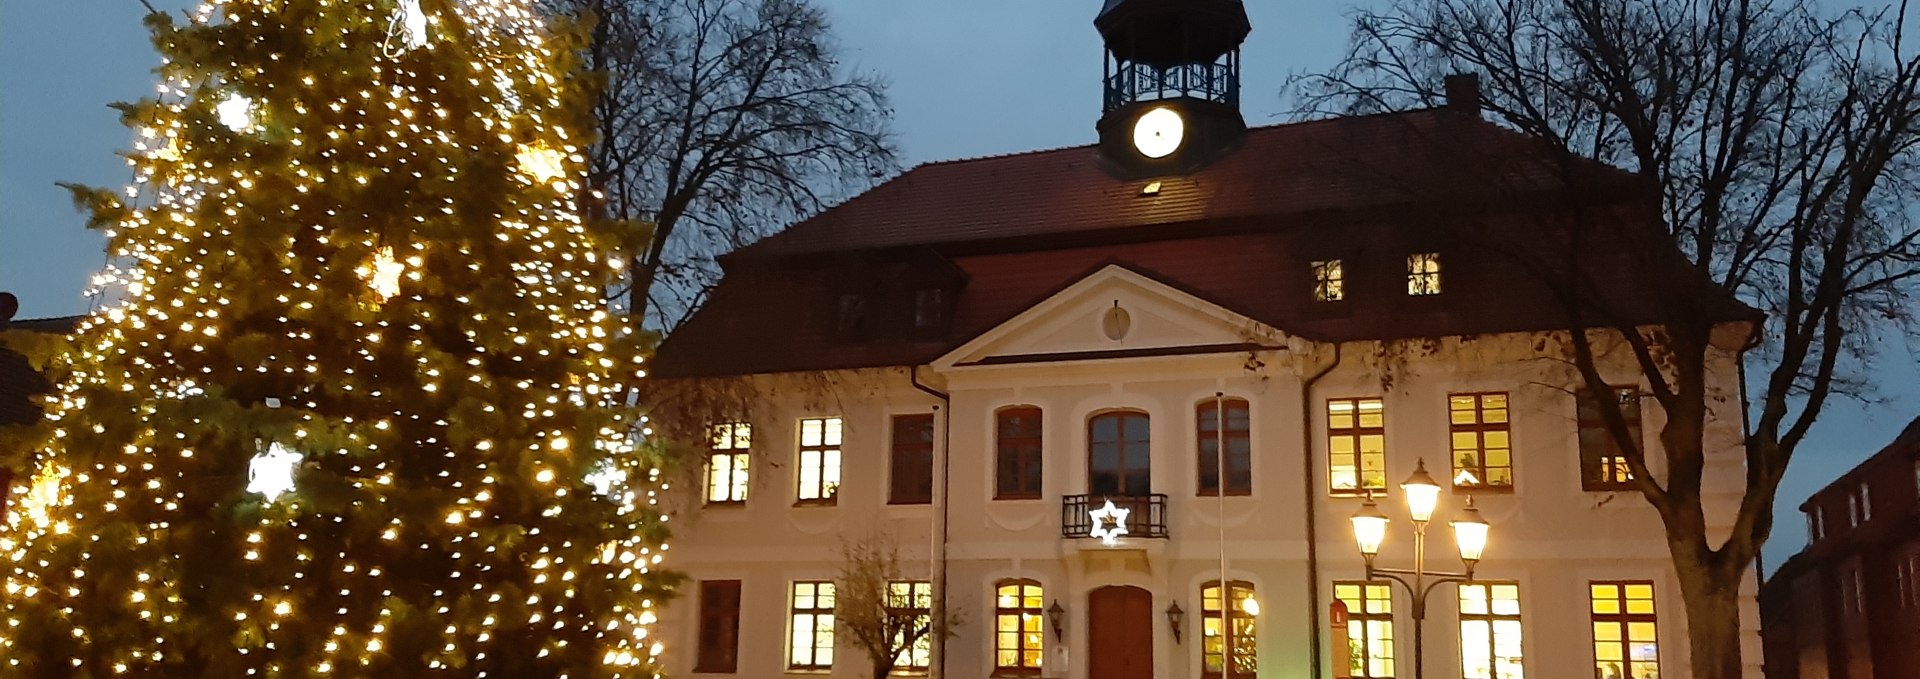 rathausplatz-ng-mit-weihnachtsbaum